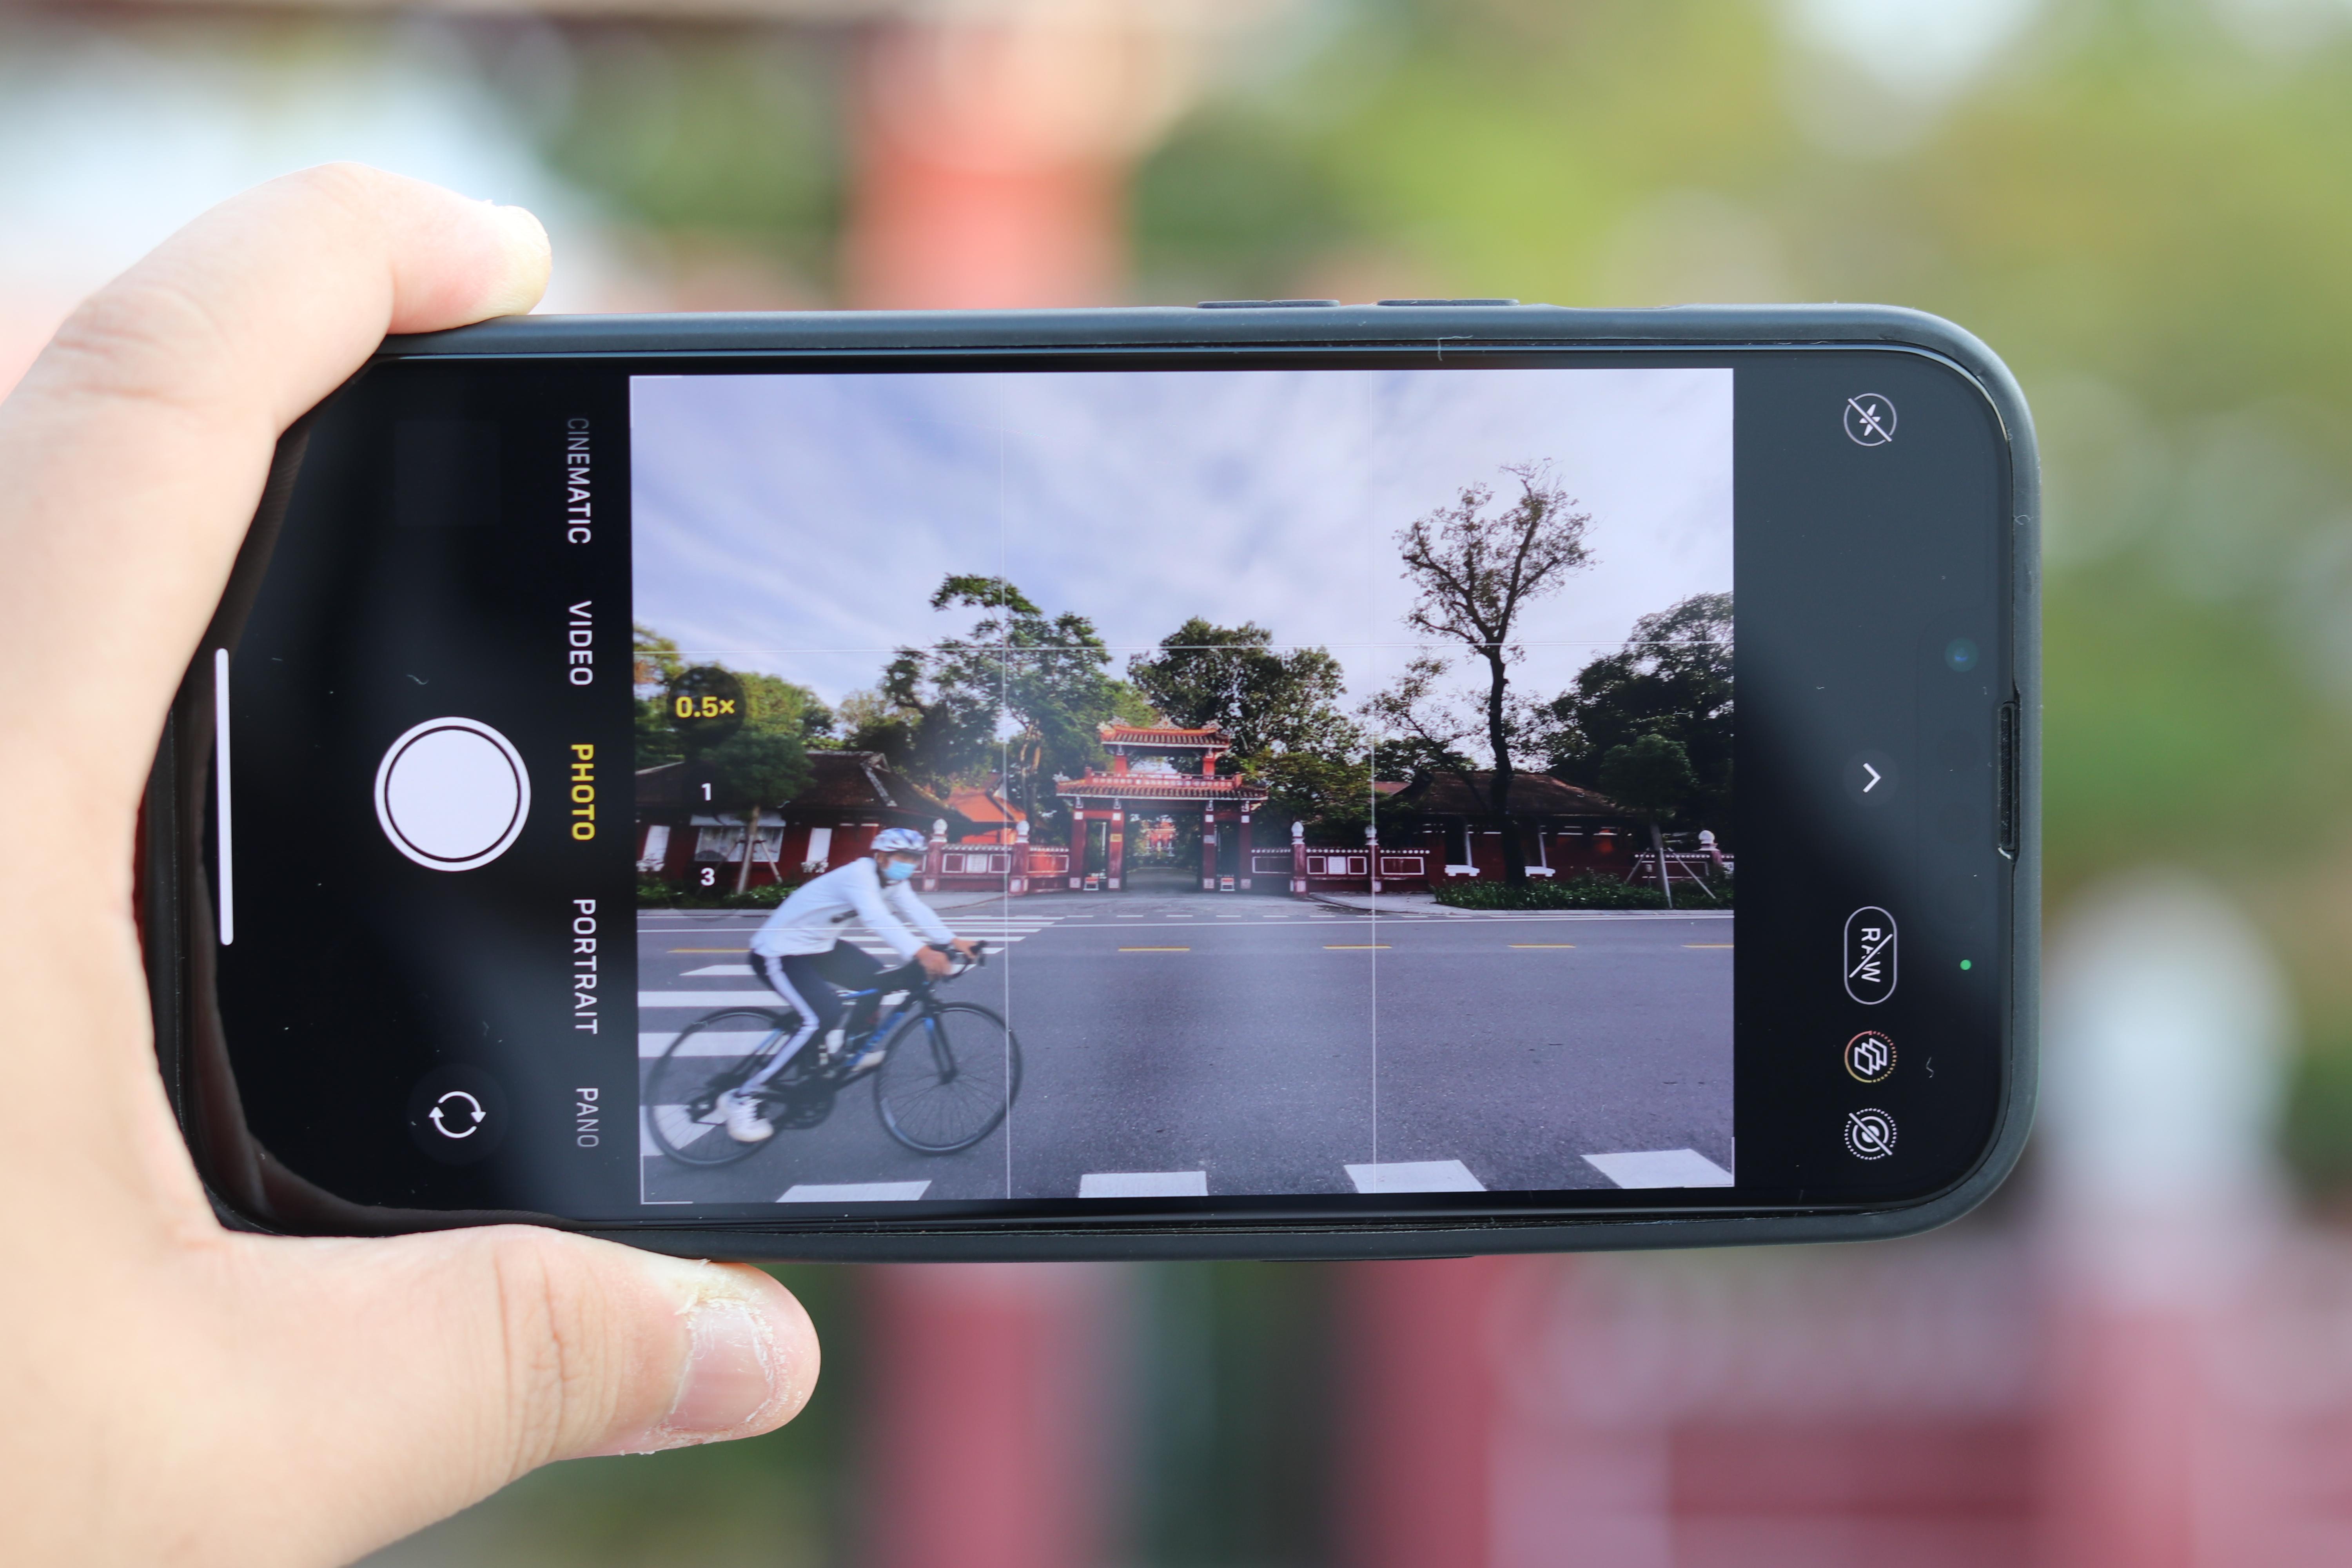 Với iPhone 13 Pro sắp ra mắt, chụp ảnh sẽ trở nên chân thật hơn bao giờ hết. Với một bộ ba camera chất lượng cao, iPhone 13 Pro đem đến cho bạn các bức ảnh đẹp như trong mơ. Điều chỉnh từng góc cạnh và ánh sáng để tạo ra những bức ảnh chưa bao giờ dễ dàng đến vậy.